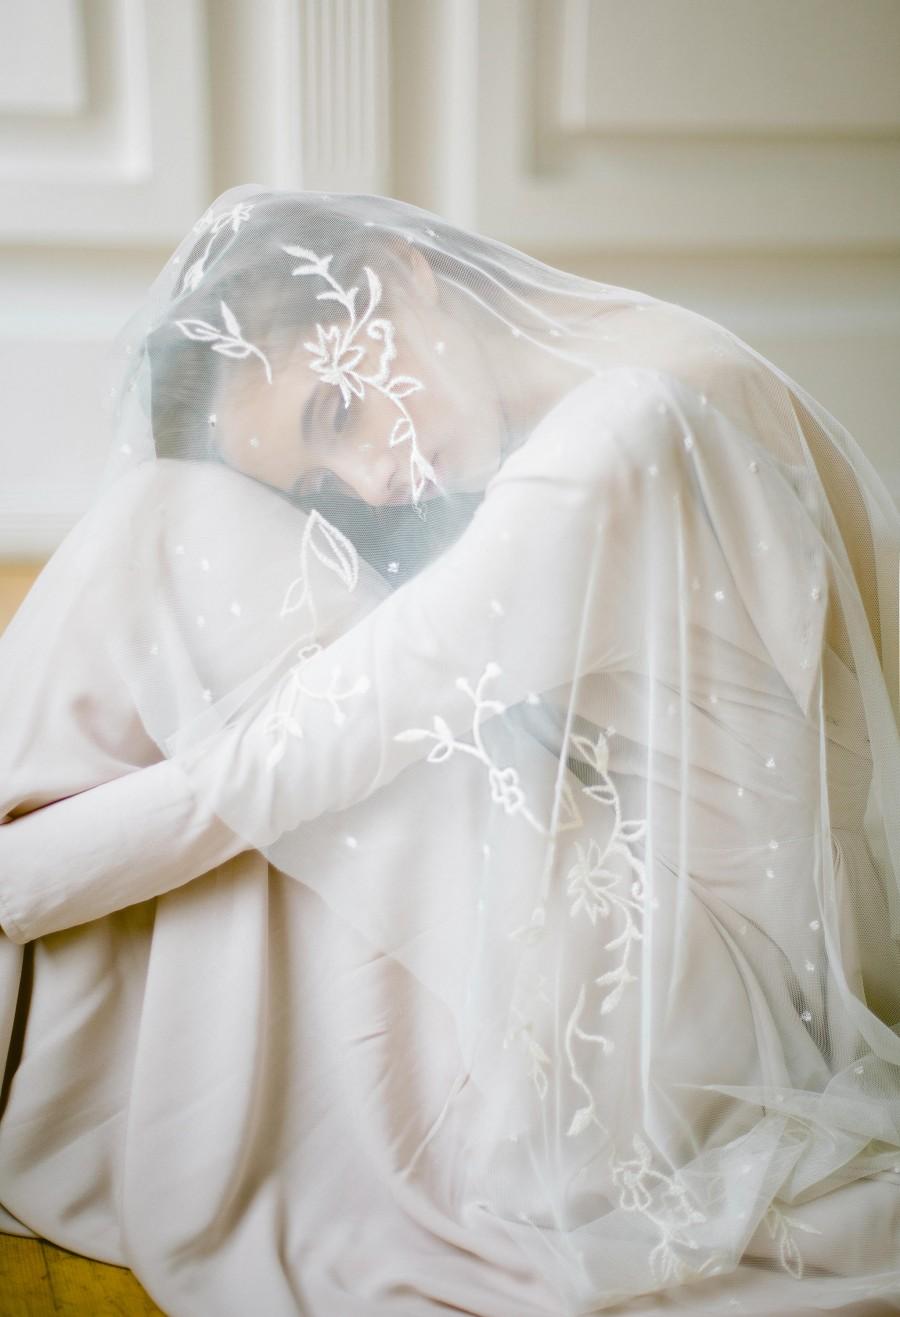 زفاف - Vintage inspired veil with floral embroidery